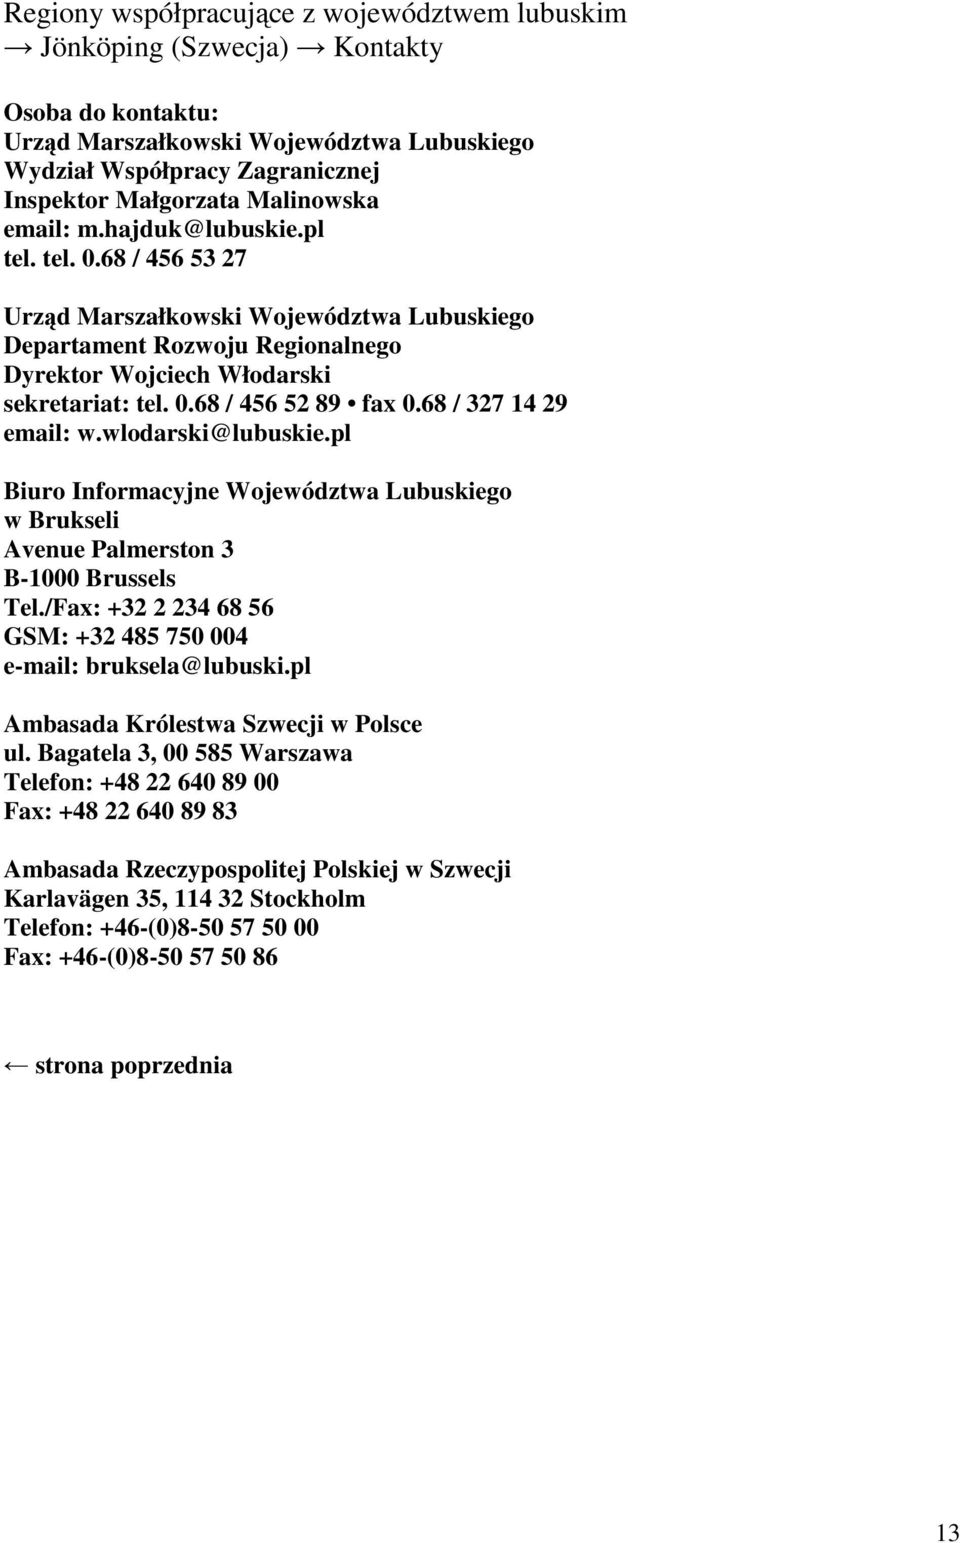 wlodarski@lubuskie.pl Biuro Informacyjne Województwa Lubuskiego w Brukseli Avenue Palmerston 3 B-1000 Brussels Tel./Fax: +32 2 234 68 56 GSM: +32 485 750 004 e-mail: bruksela@lubuski.